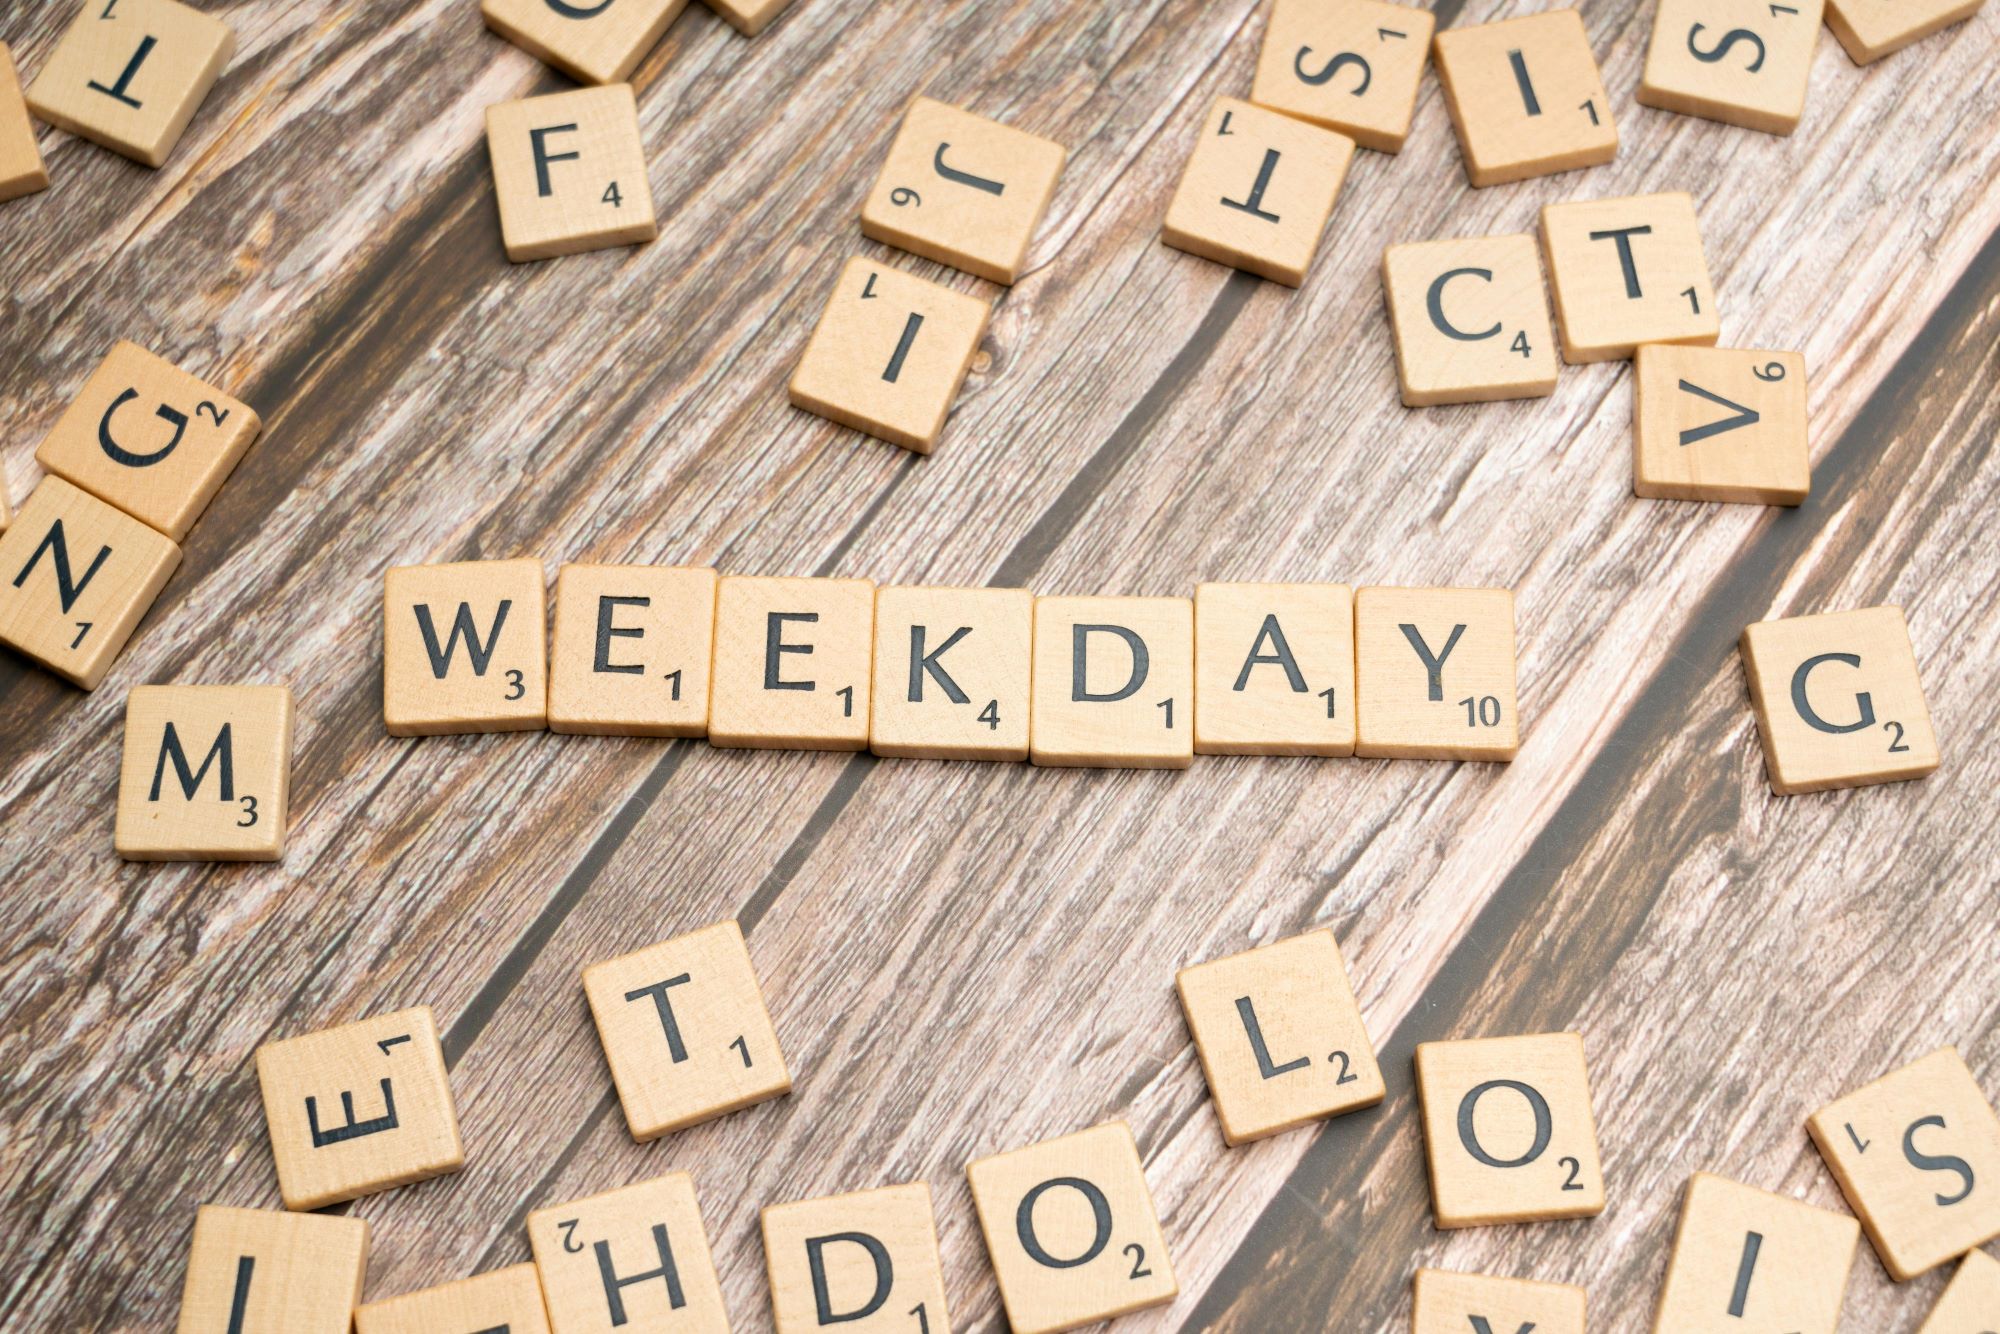 Weekday to dzień powszedni. Day of the week to dzień tygodnia.